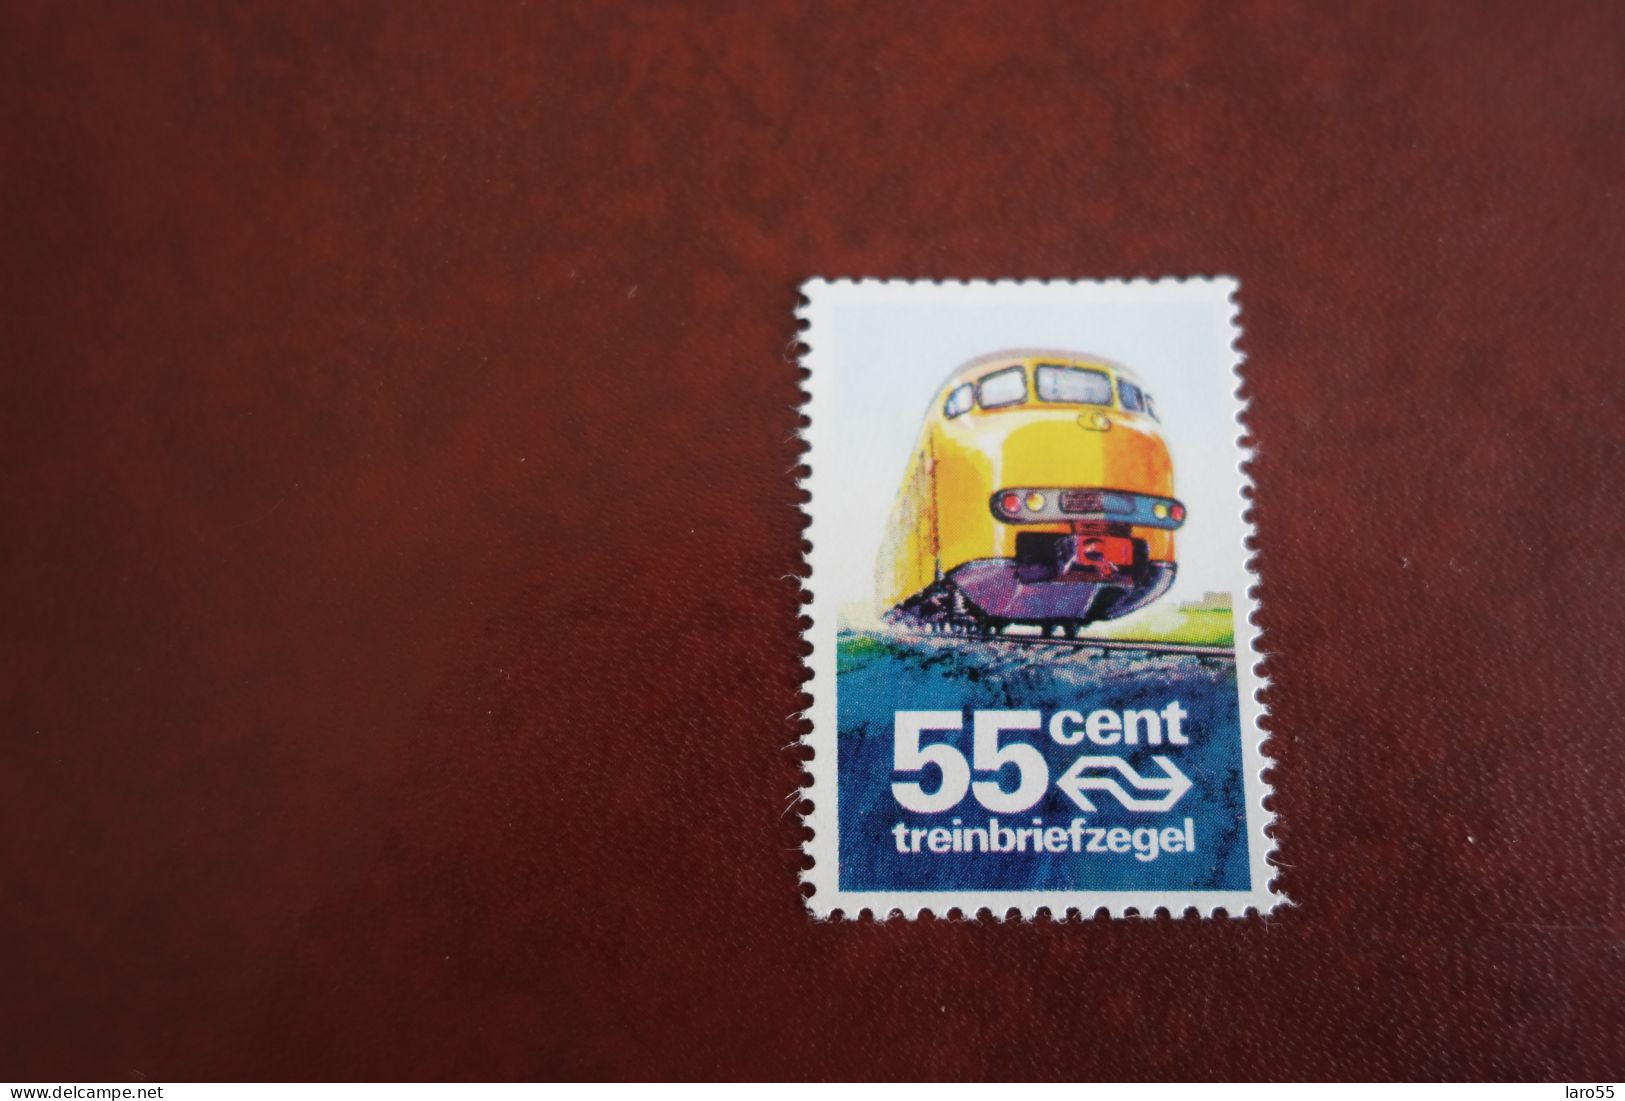 Treinbriefzegel 55 Cent - Tren